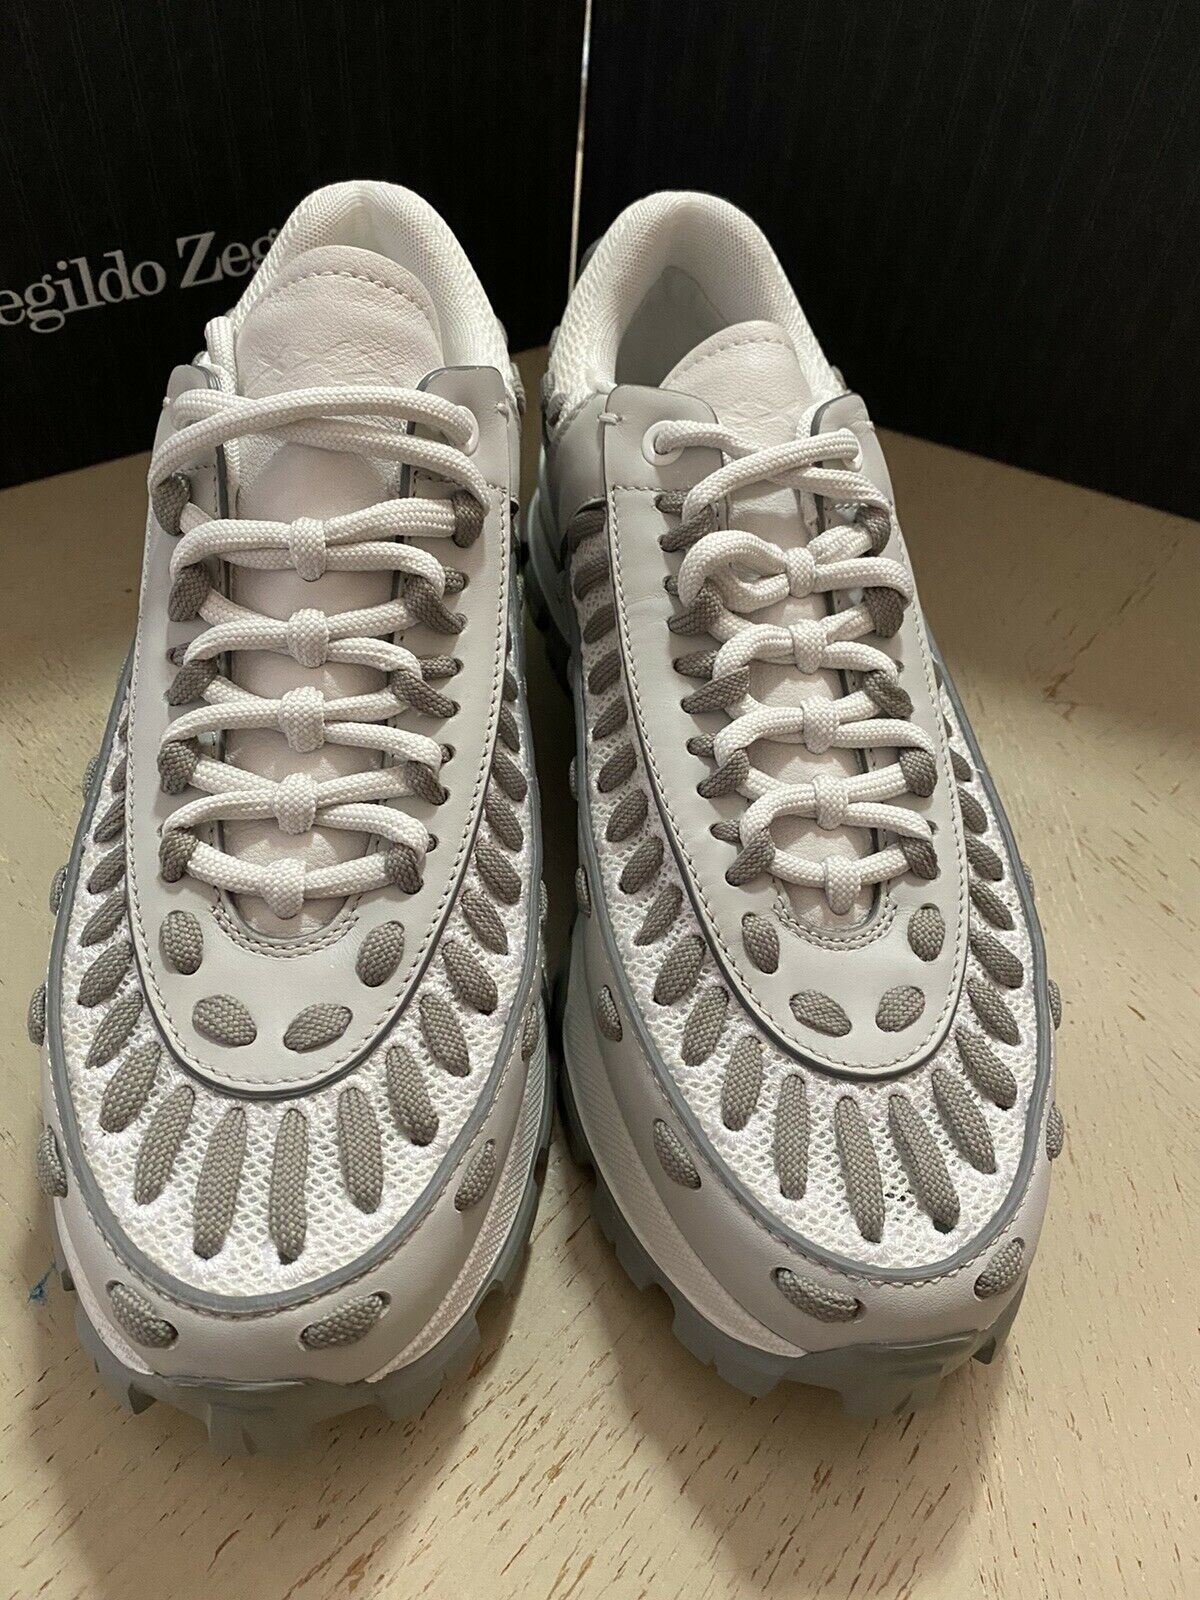 Neu $795 Ermenegildo Zegna Couture Leder-Sneakers Schuhe Weiß/Grau 8,5 US Ita